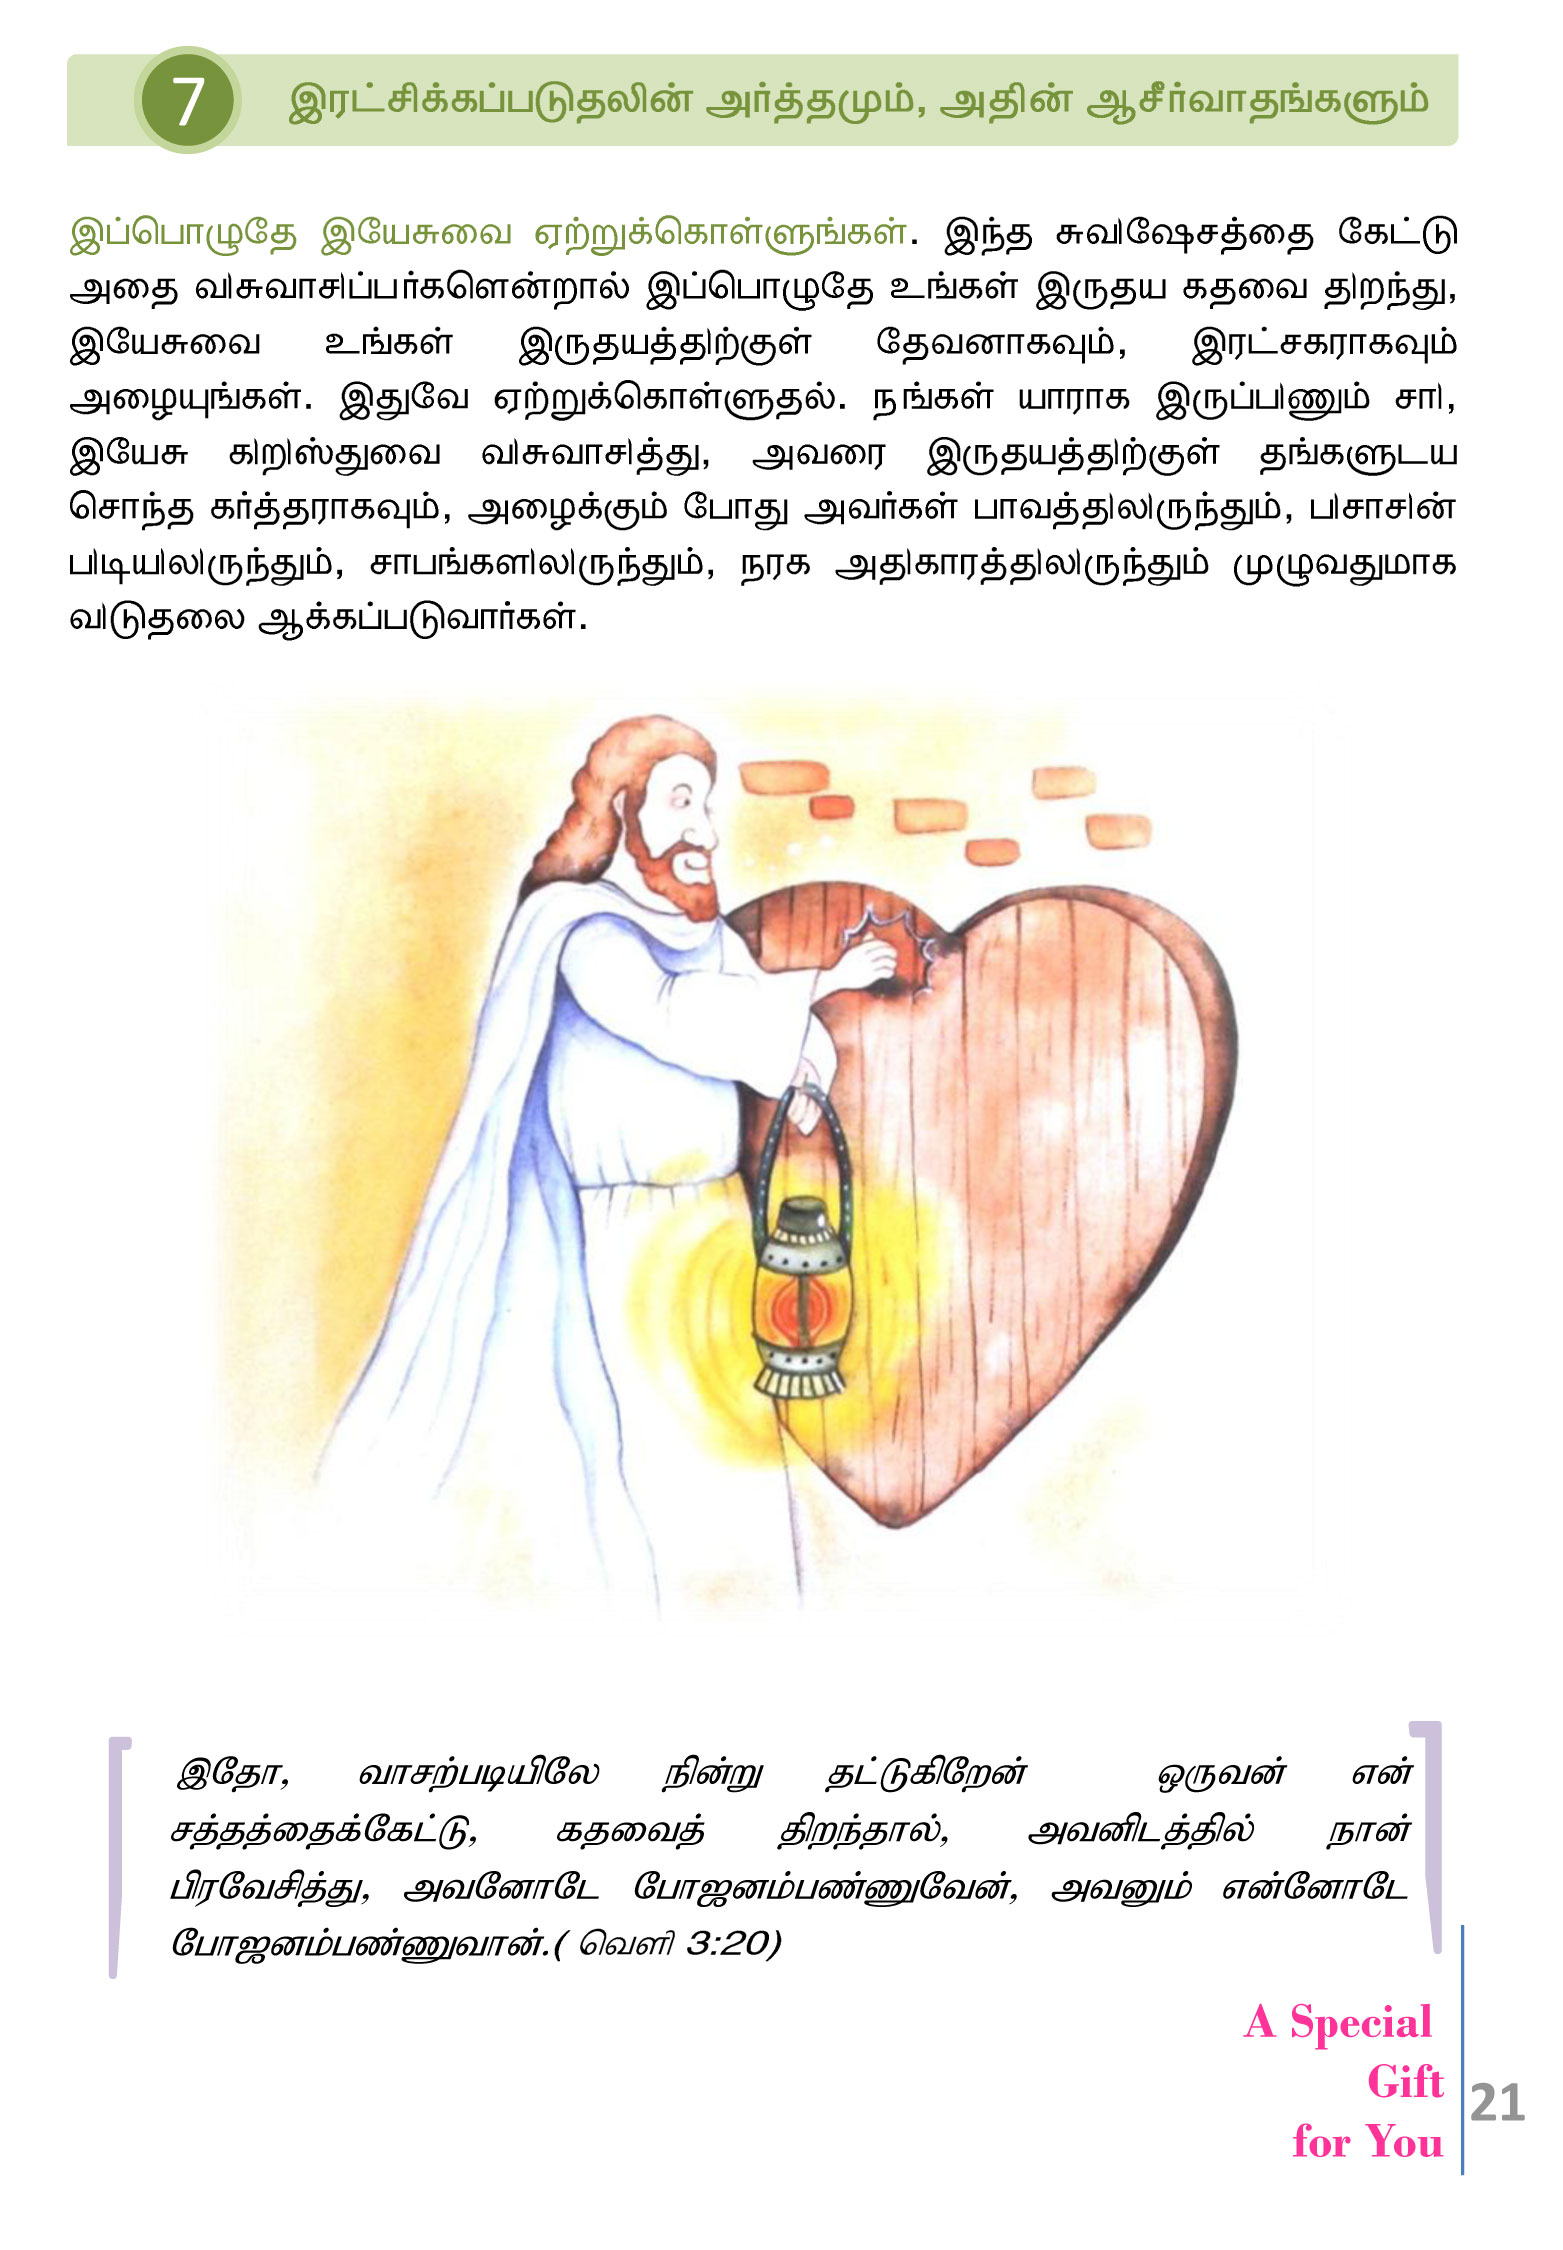 Tamil-Evangelism-Book-Pdf-3-21.jpg